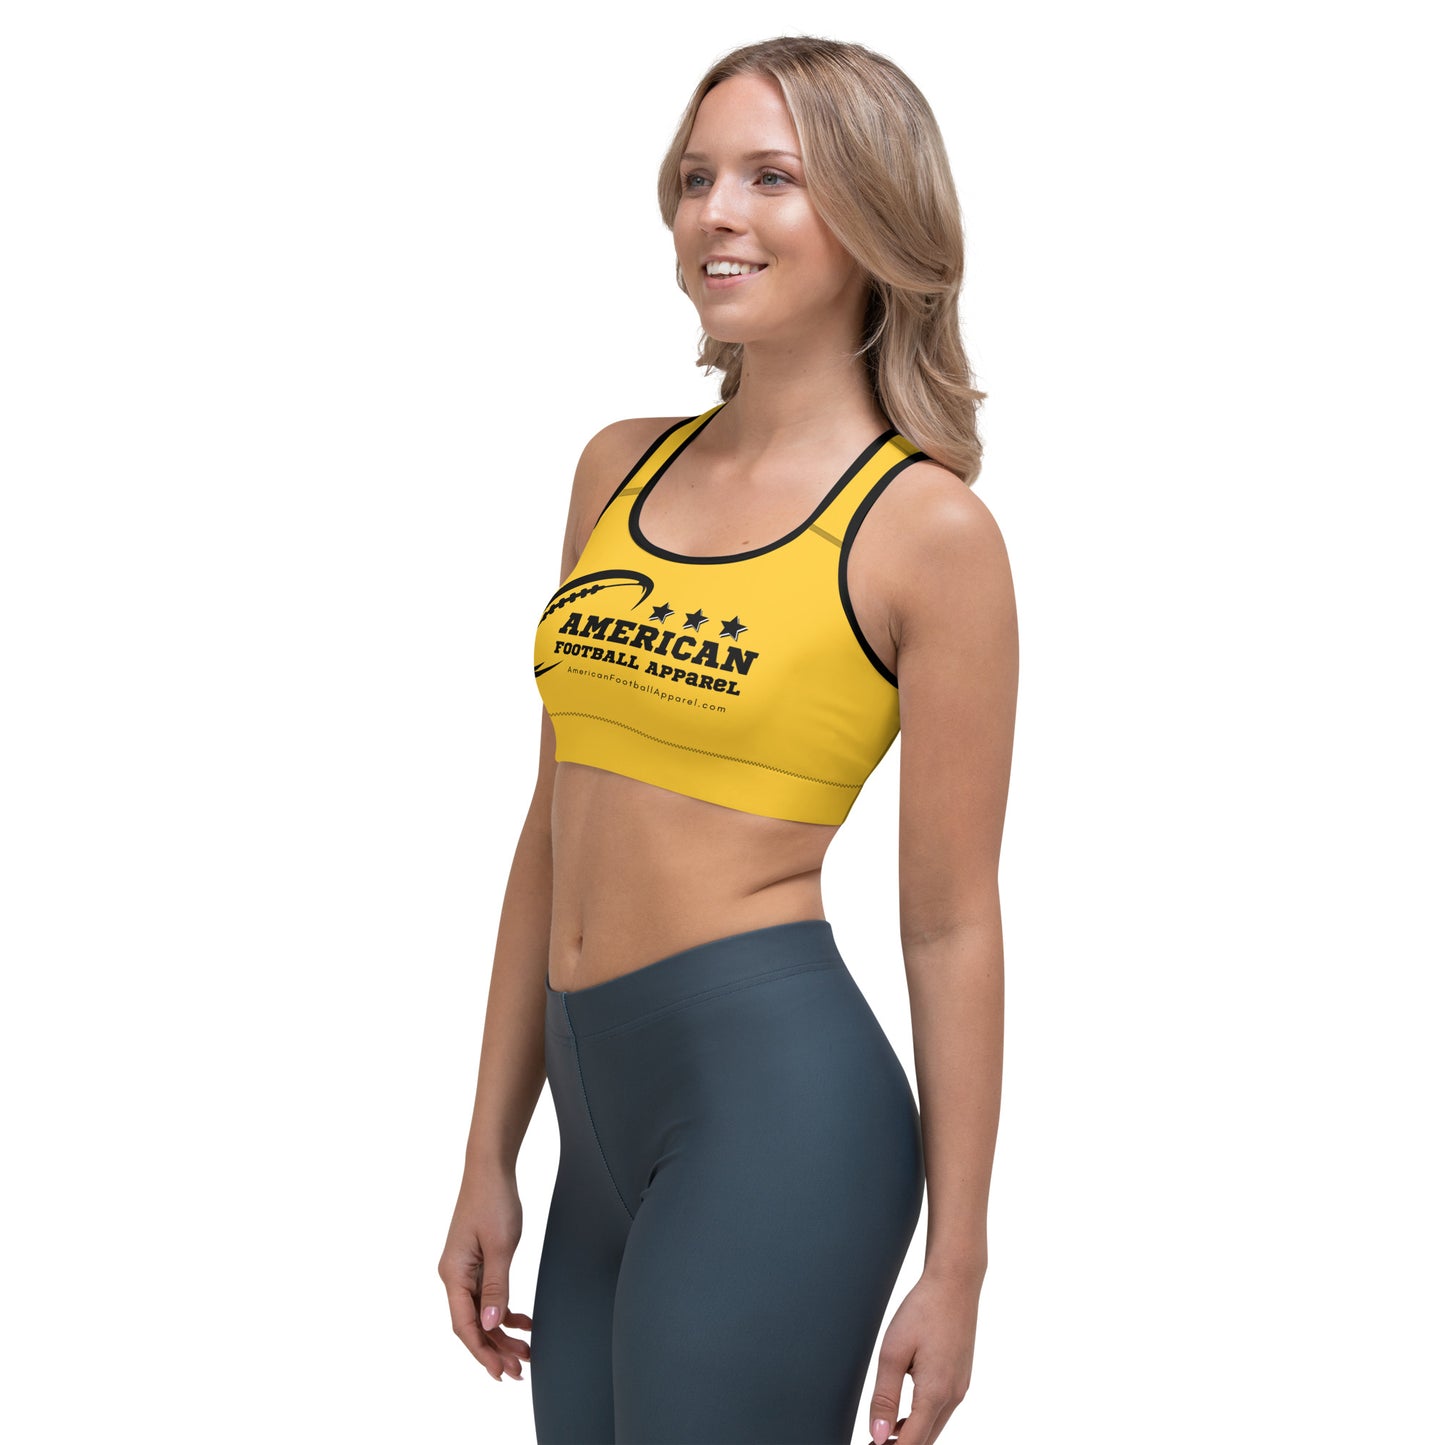 AFA Basics Yellow Soft Sports bra